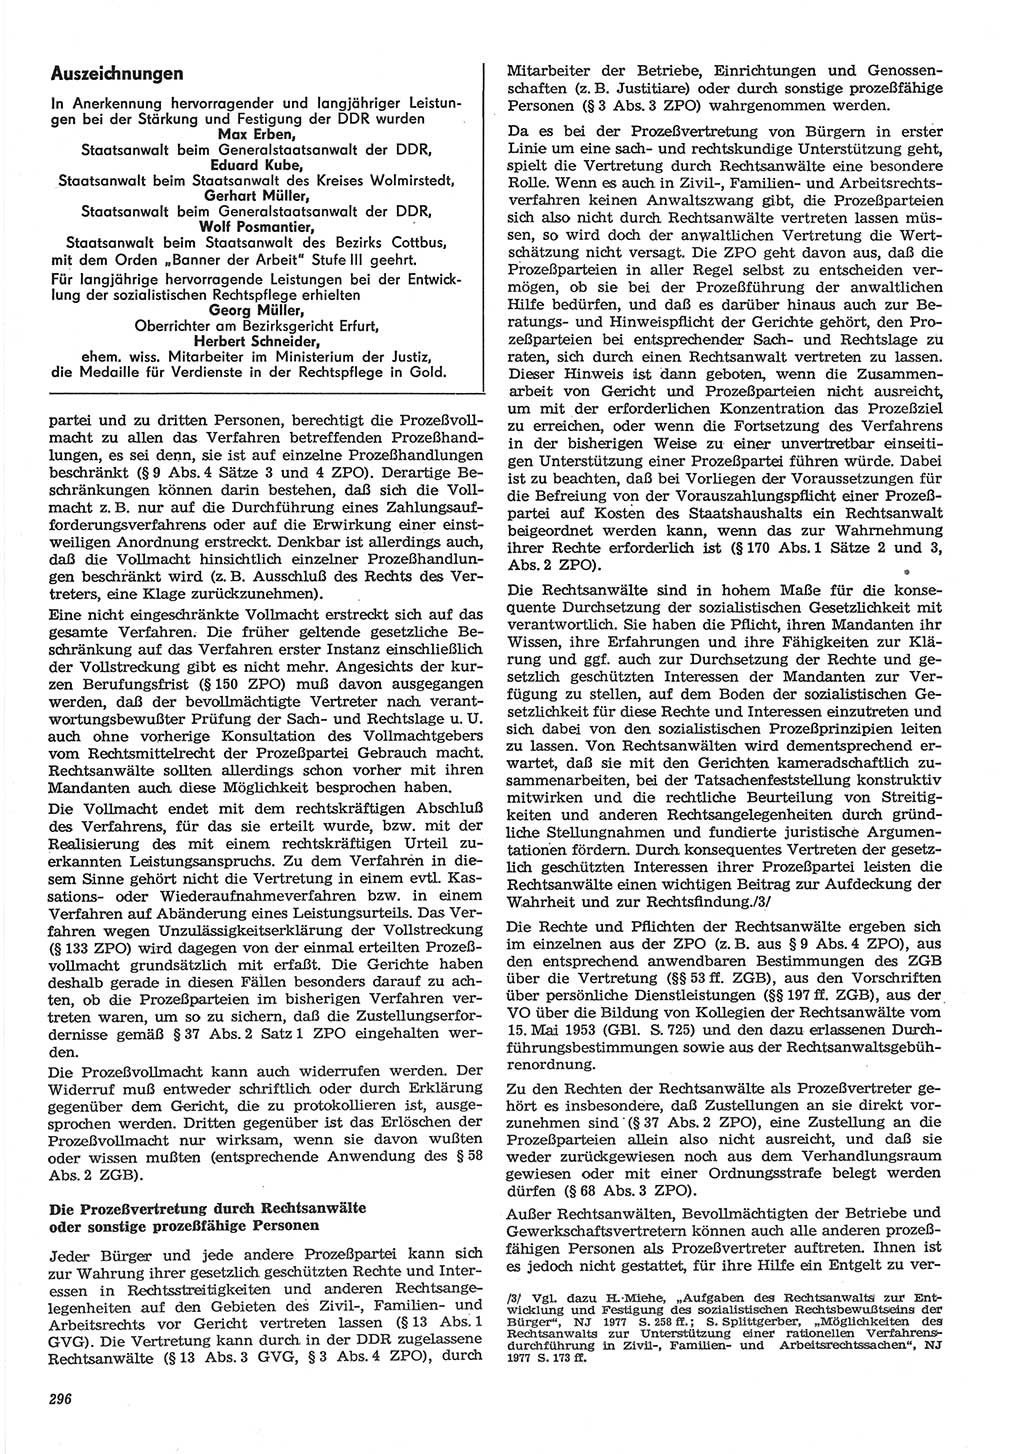 Neue Justiz (NJ), Zeitschrift für Recht und Rechtswissenschaft-Zeitschrift, sozialistisches Recht und Gesetzlichkeit, 31. Jahrgang 1977, Seite 296 (NJ DDR 1977, S. 296)